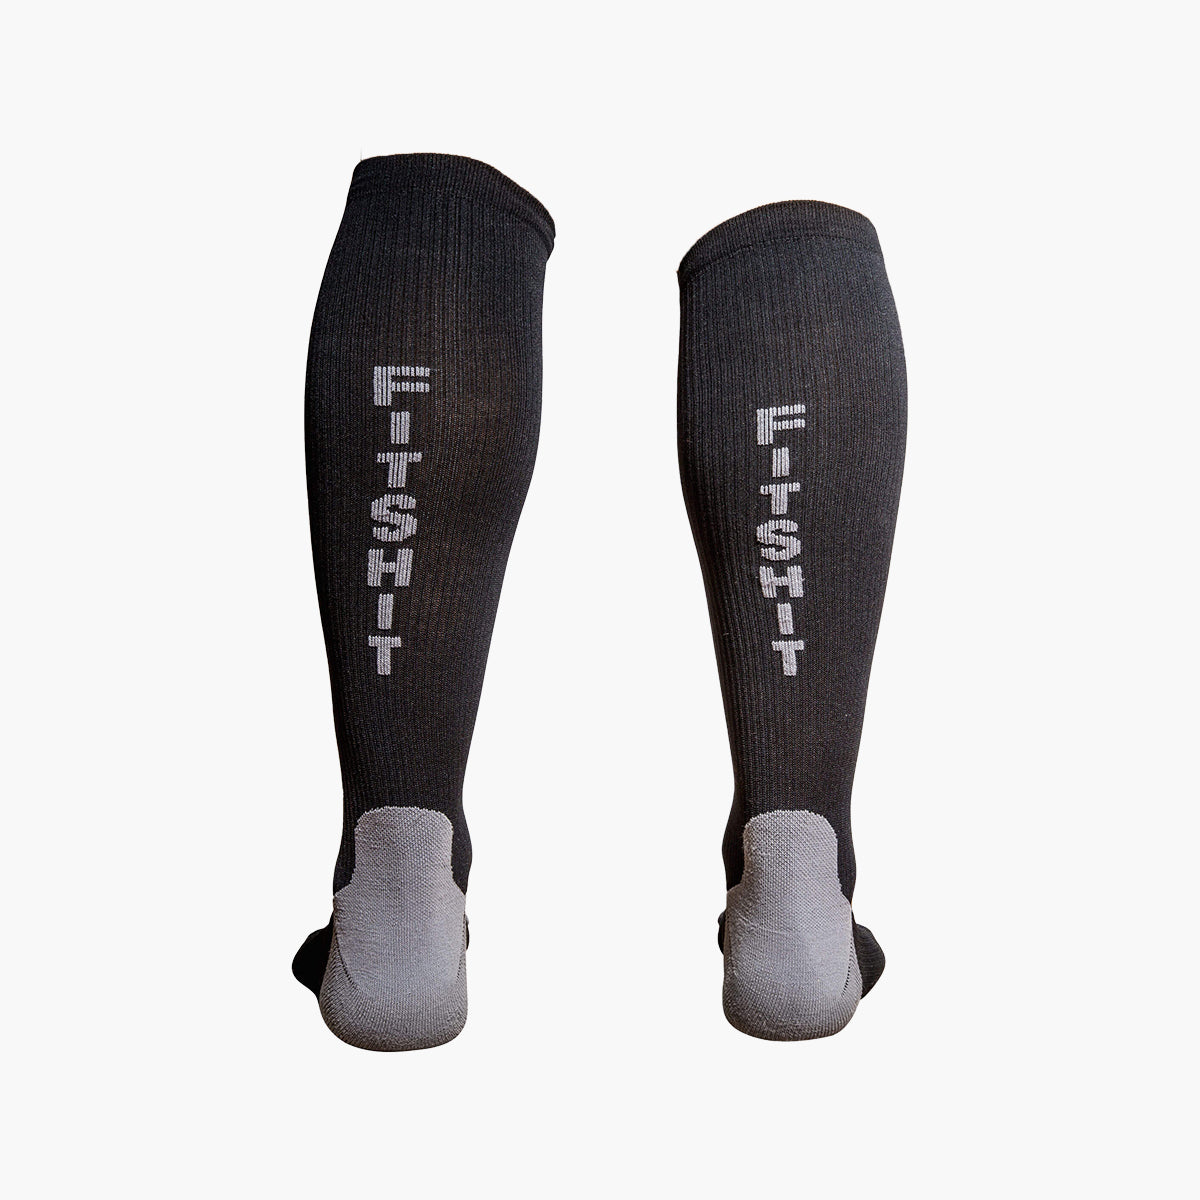 FITSHIT - Premium Athletic Compression Socks